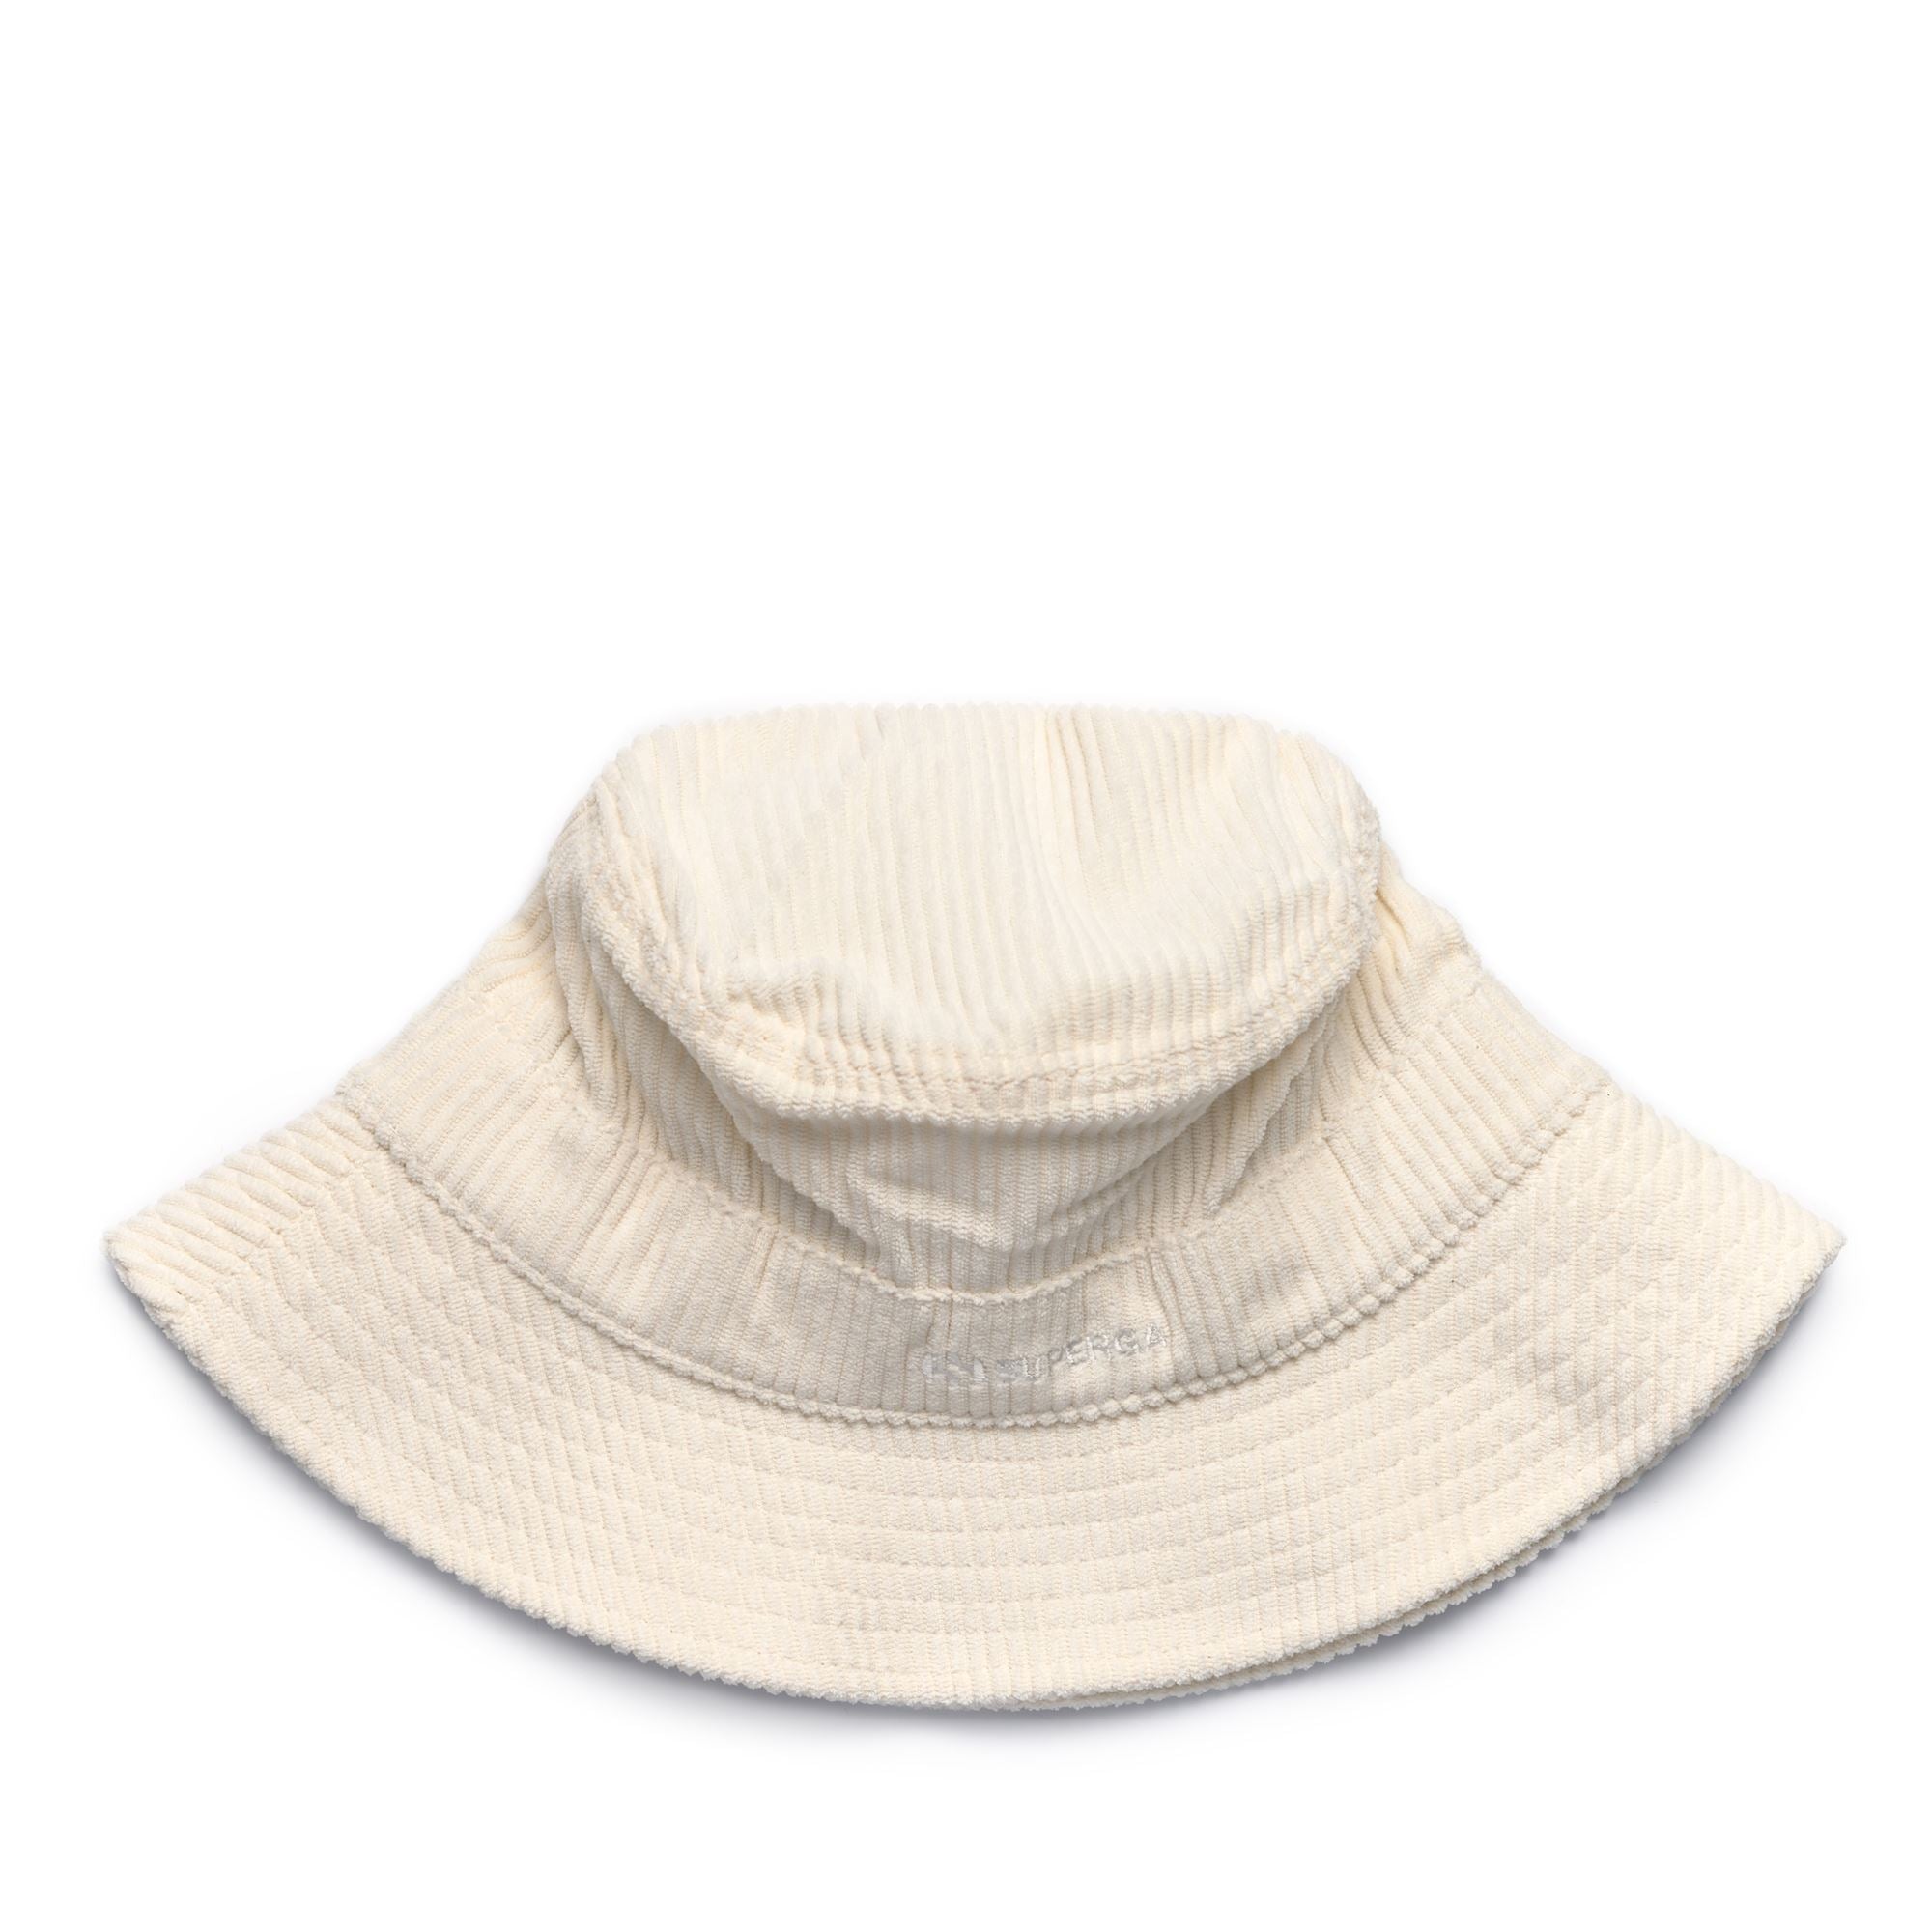 BUCKET HAT CORDUROY - Headwear - Hat - Unisex - BEIGE CRYSTAL